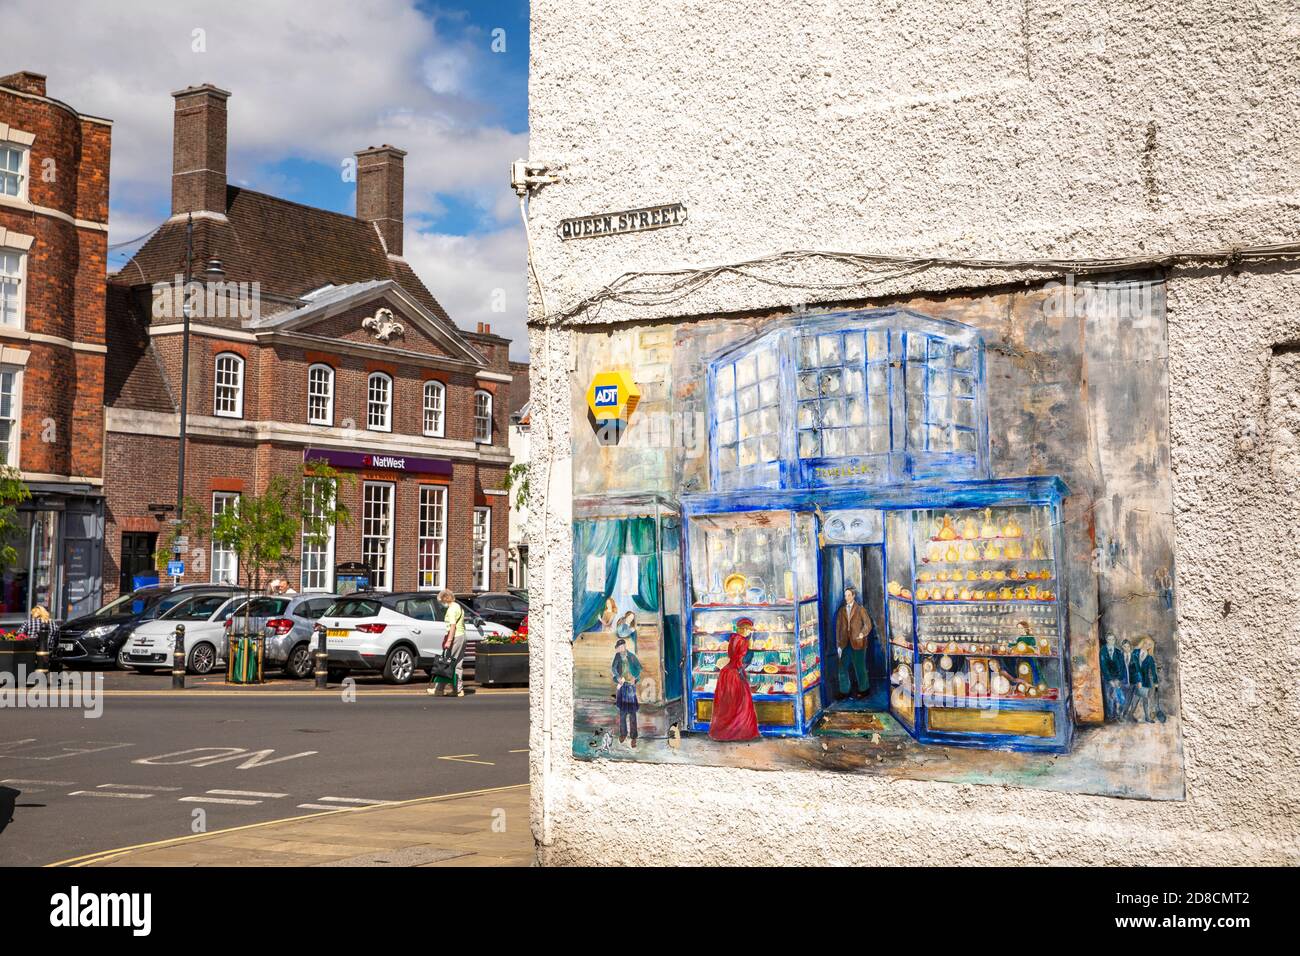 Großbritannien, England, Lincolnshire Wolds, Louth, Queen Street, gemalte Wandgemälde an der Wand von Scotts Juweliere, die zum Marktplatz führen Stockfoto